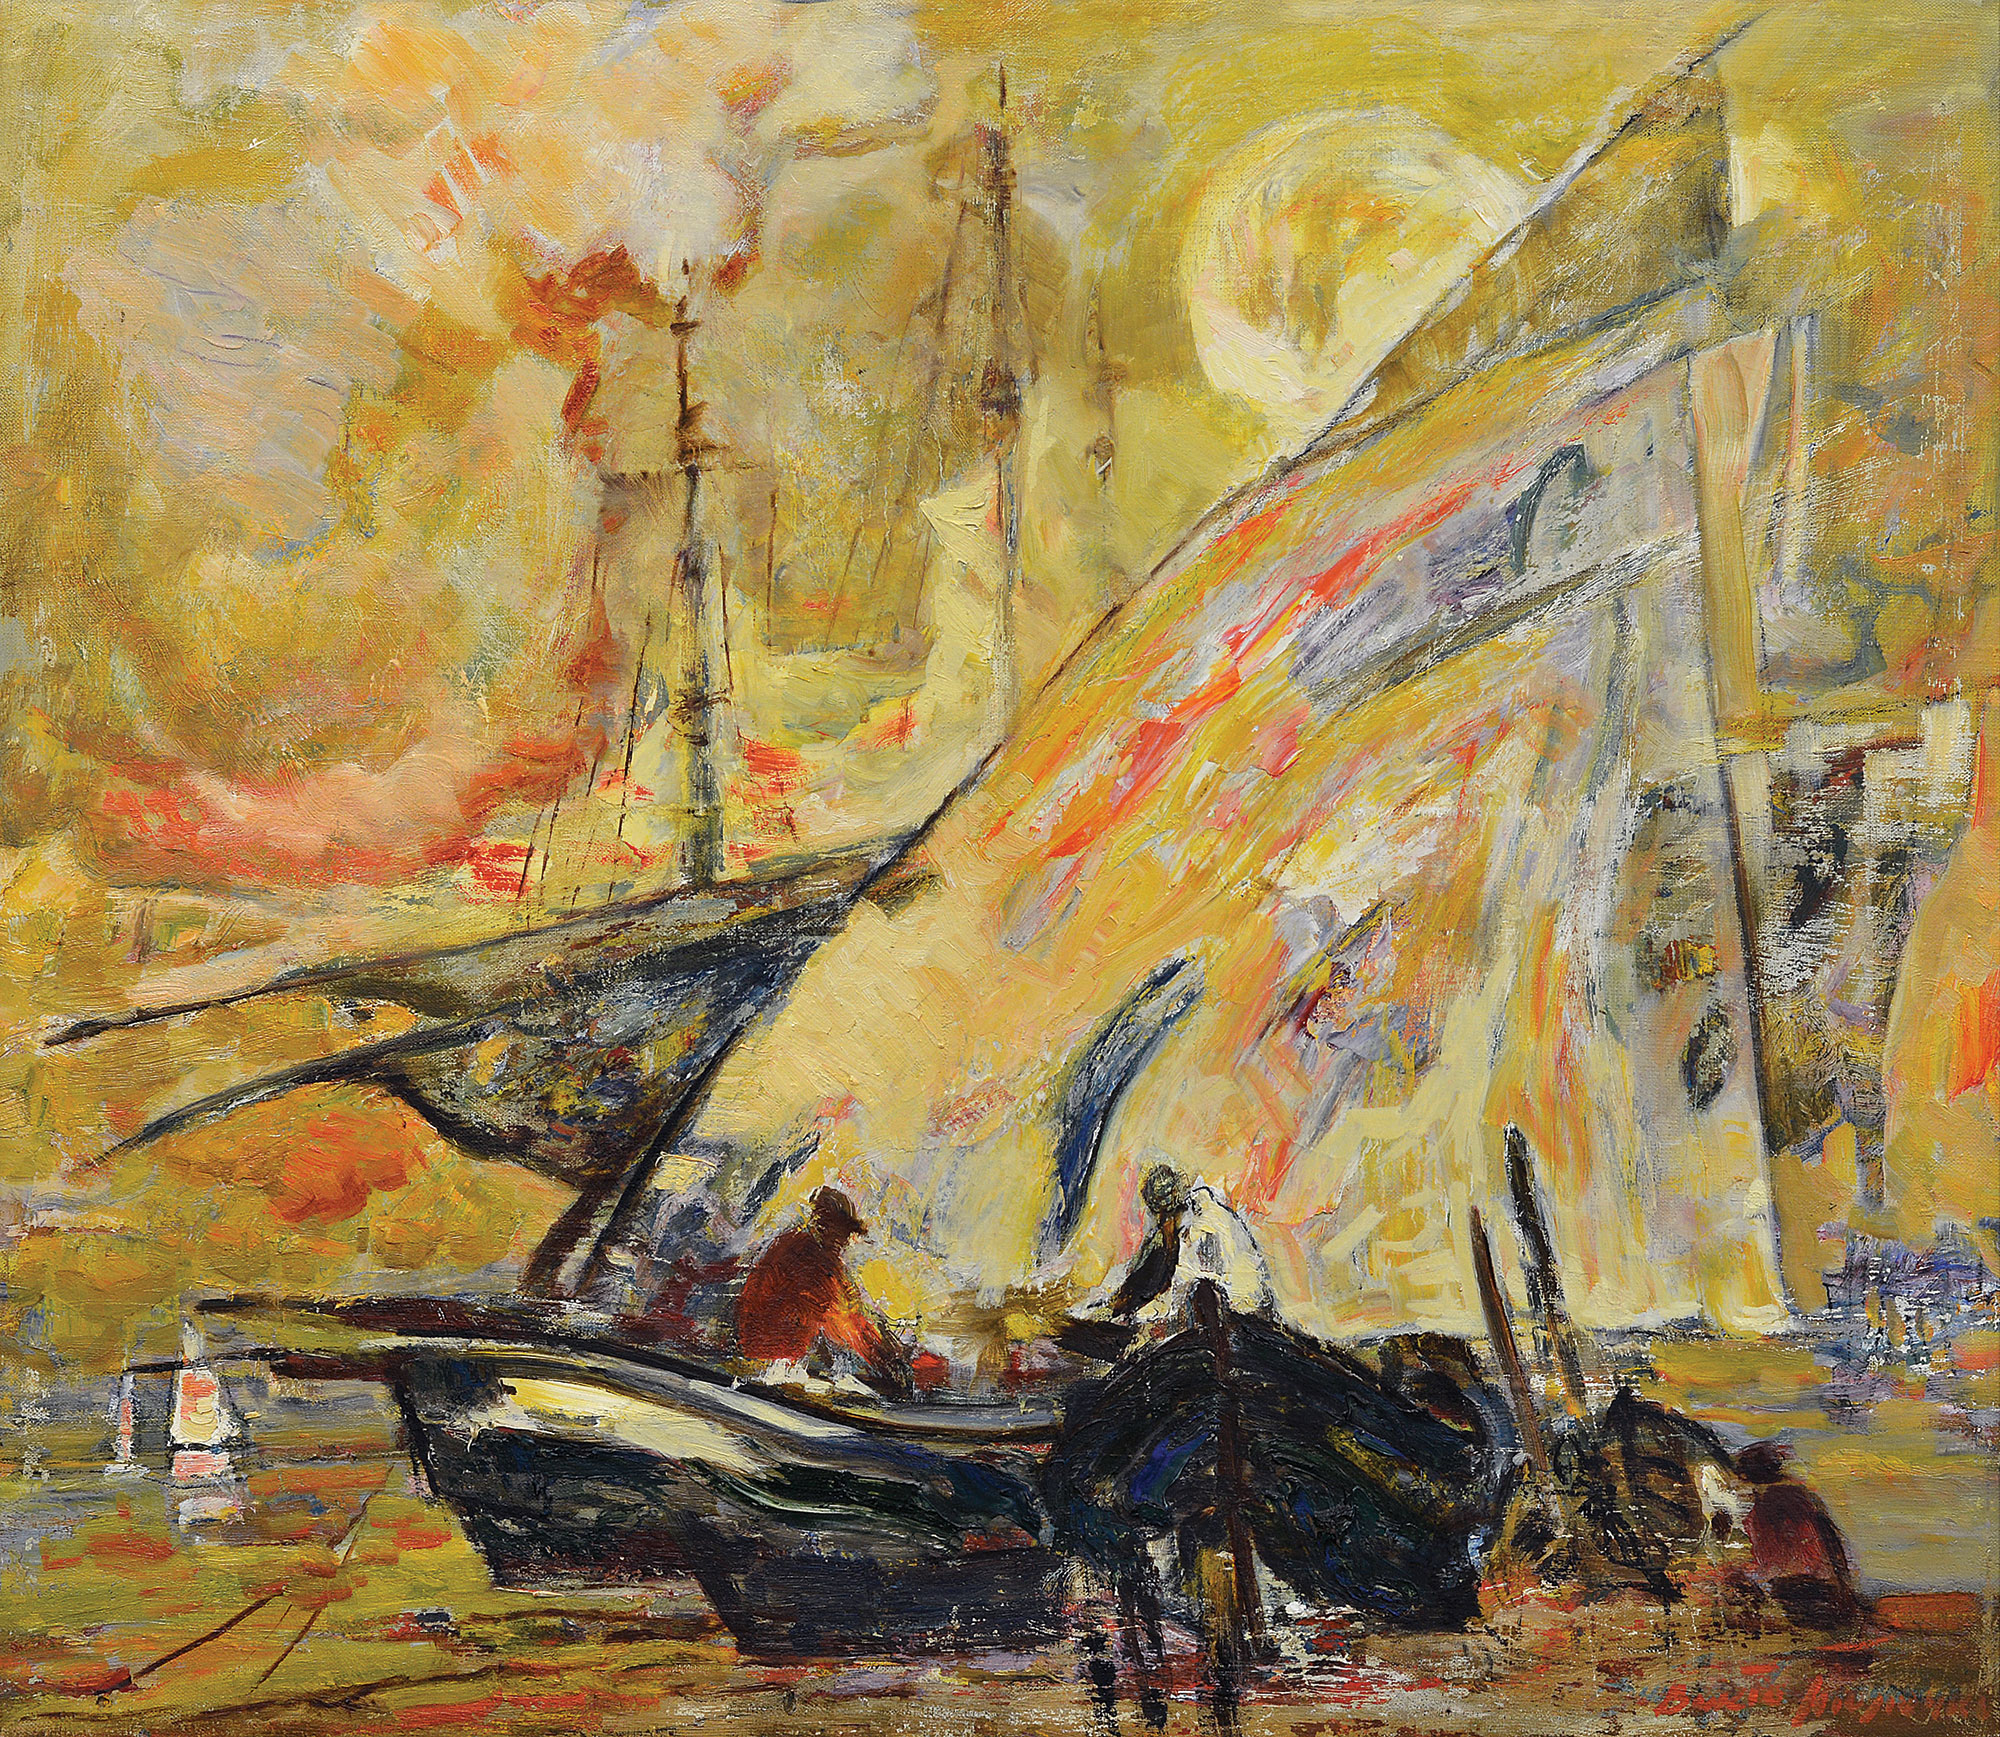 "Sailboats", 1998